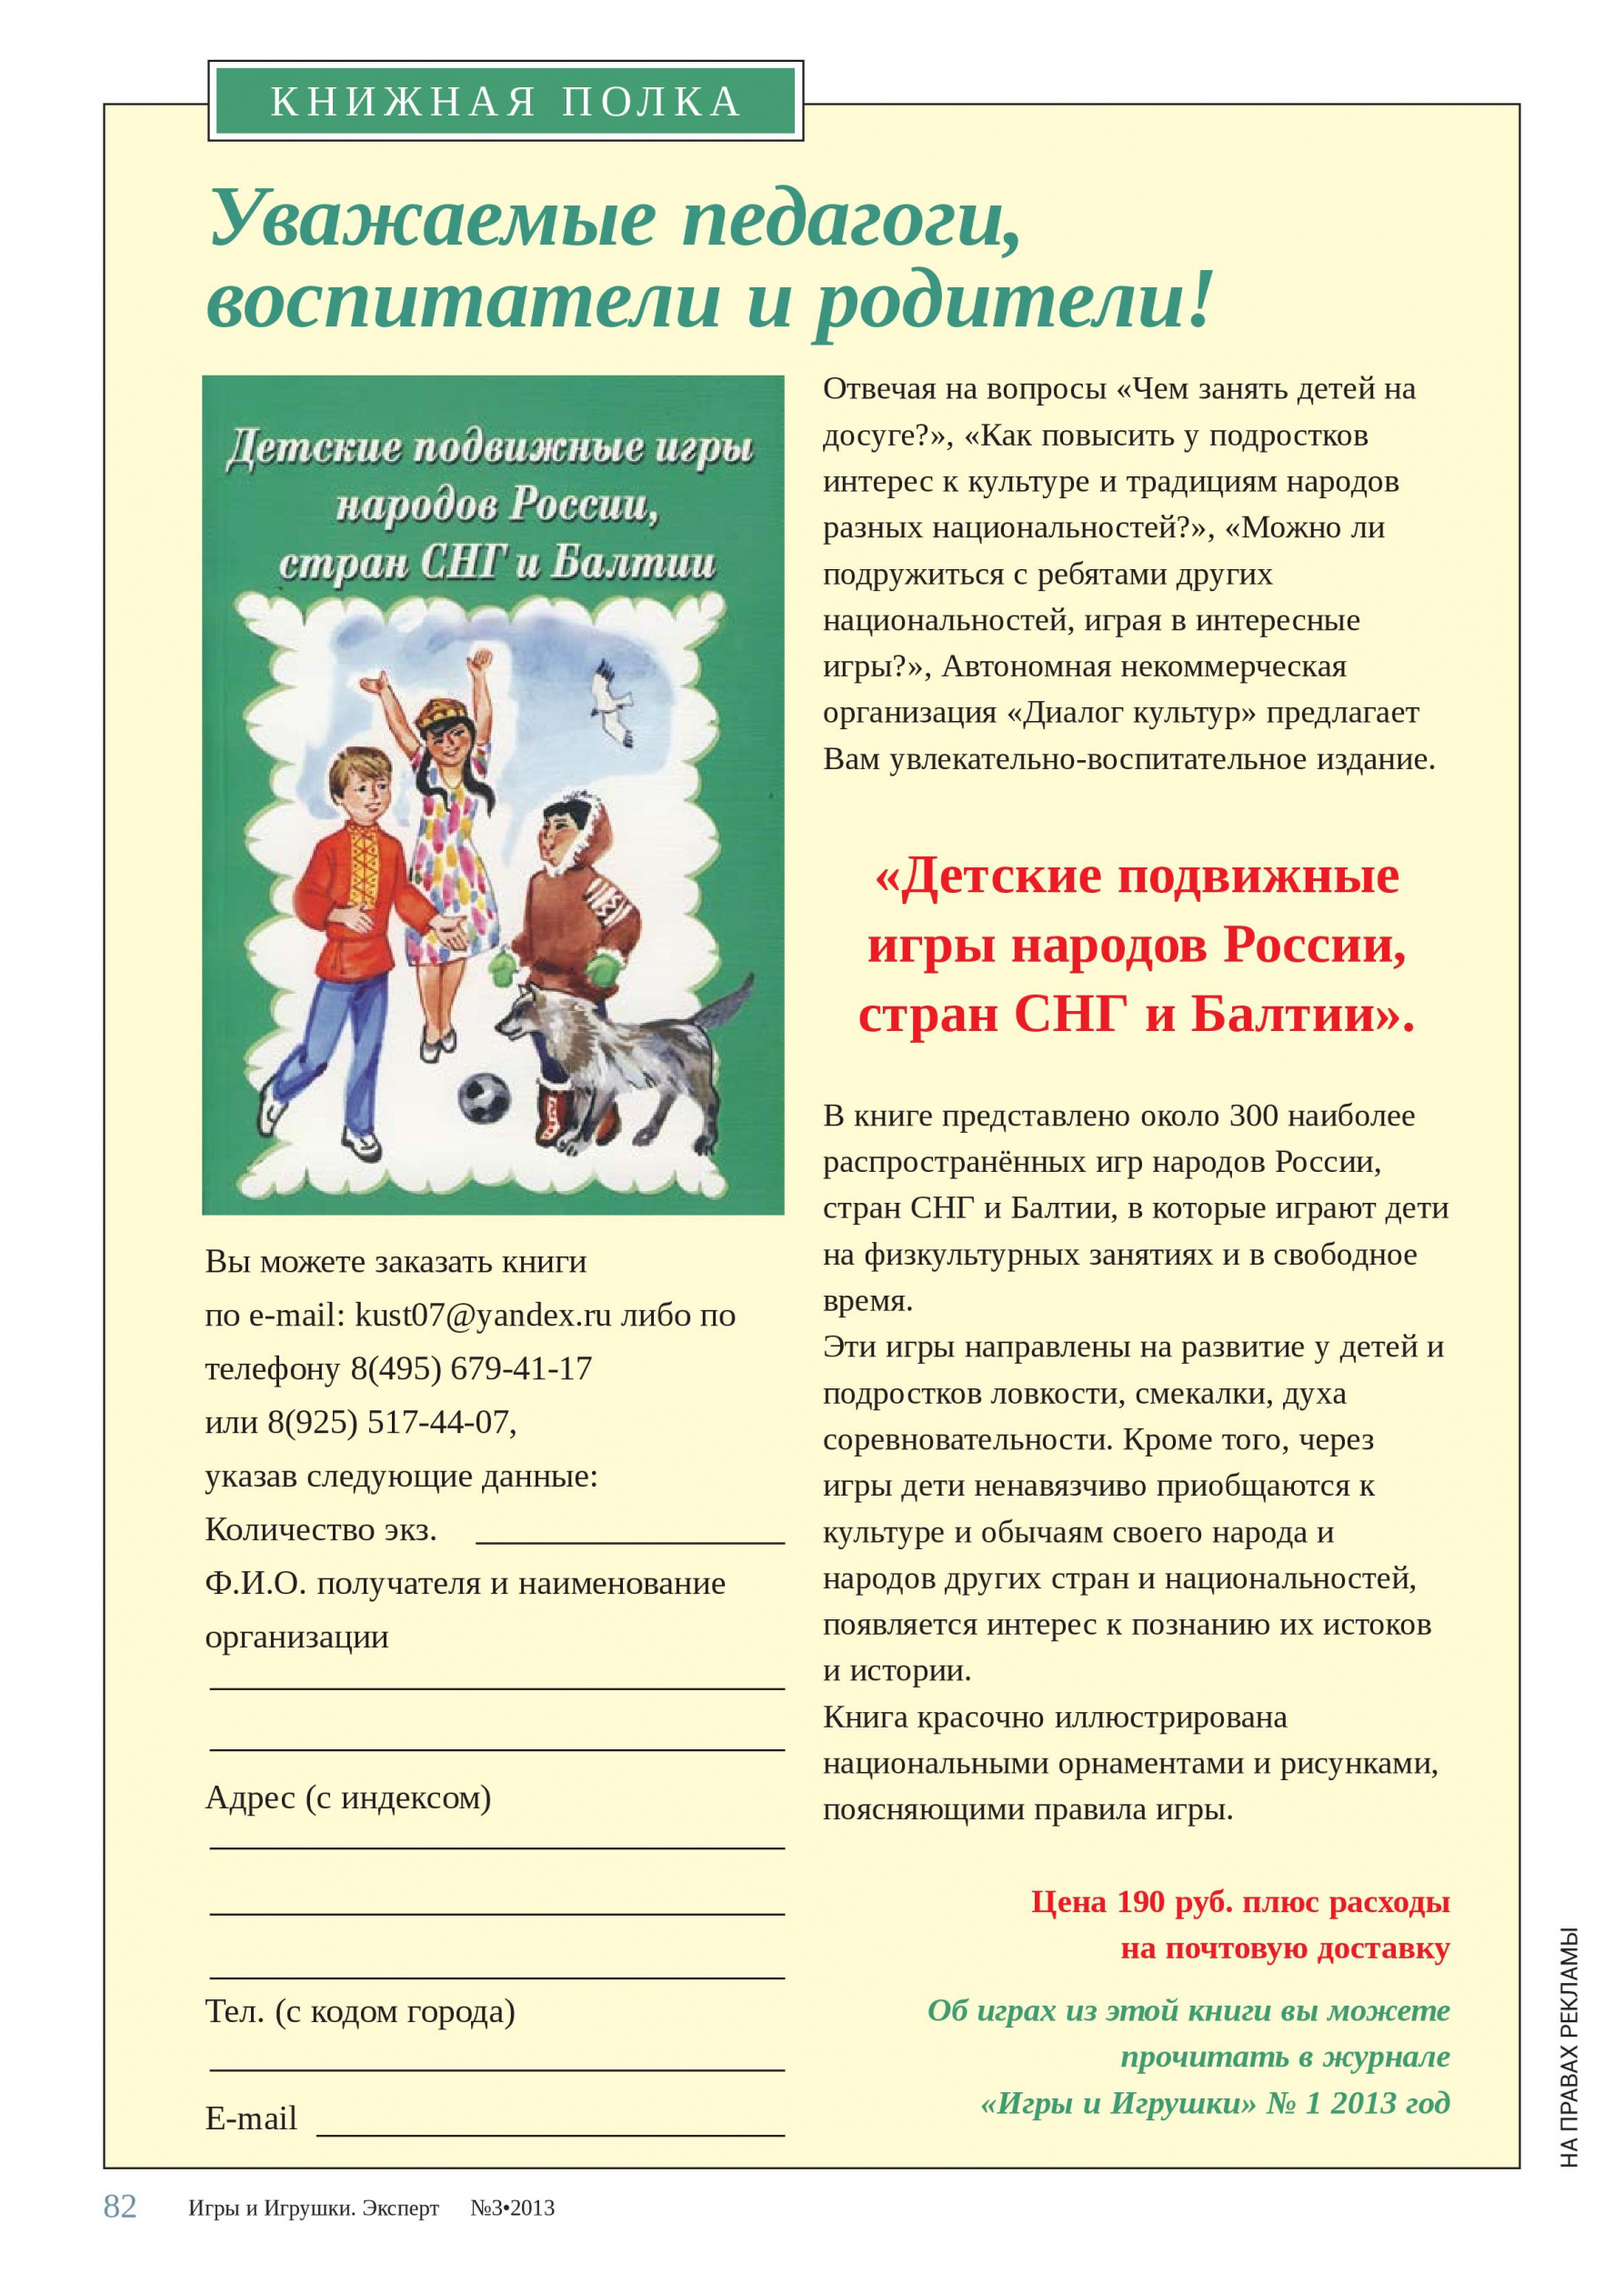 «Детские подвижные игры народов России, стран СНГ и Балтии»